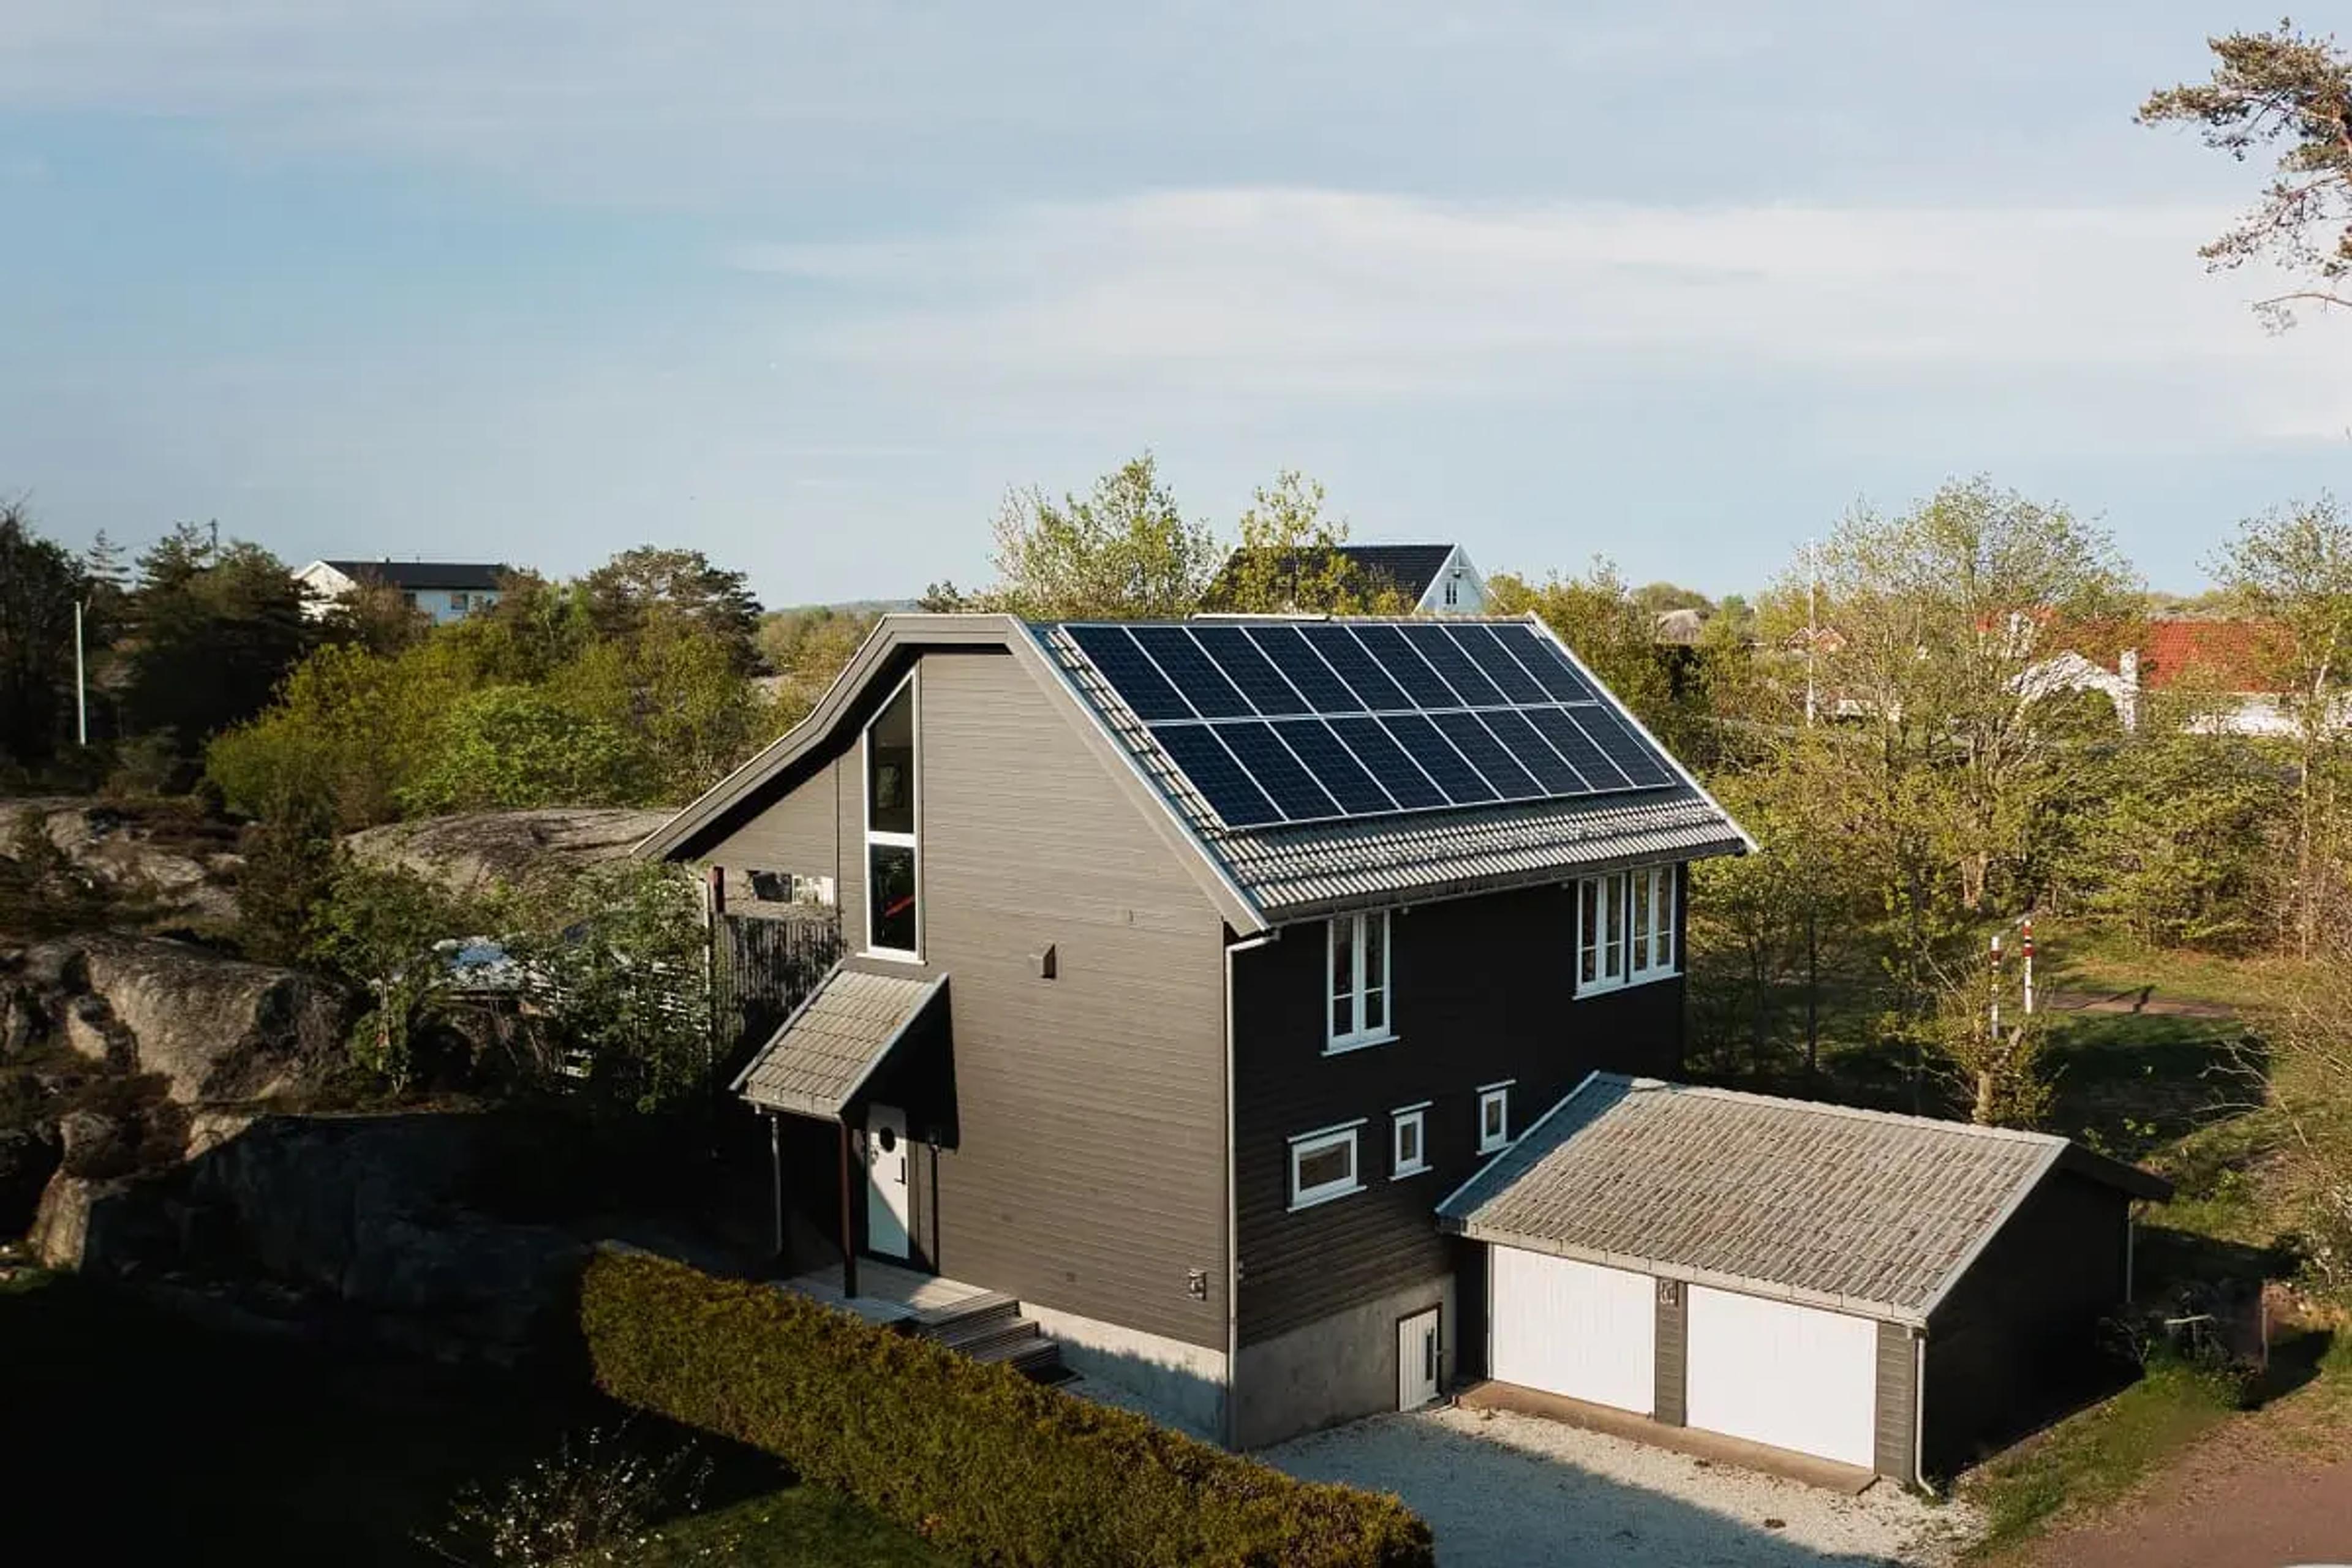 18 st solpaneler på modernt hus i kuperat landskap